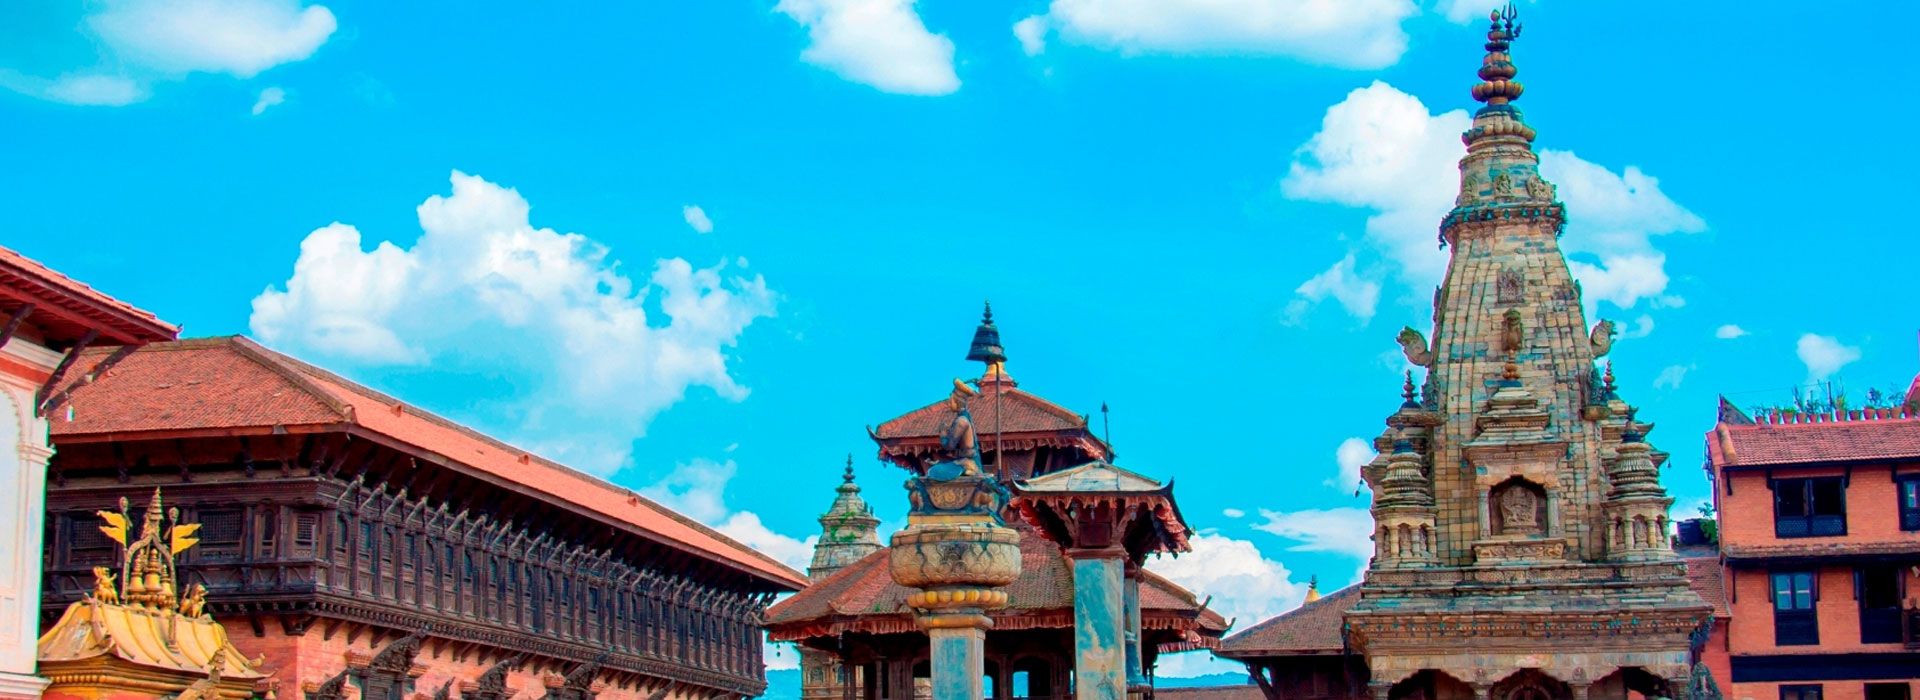 Bhaktapur Durbar Square, an UNESCO heritage site